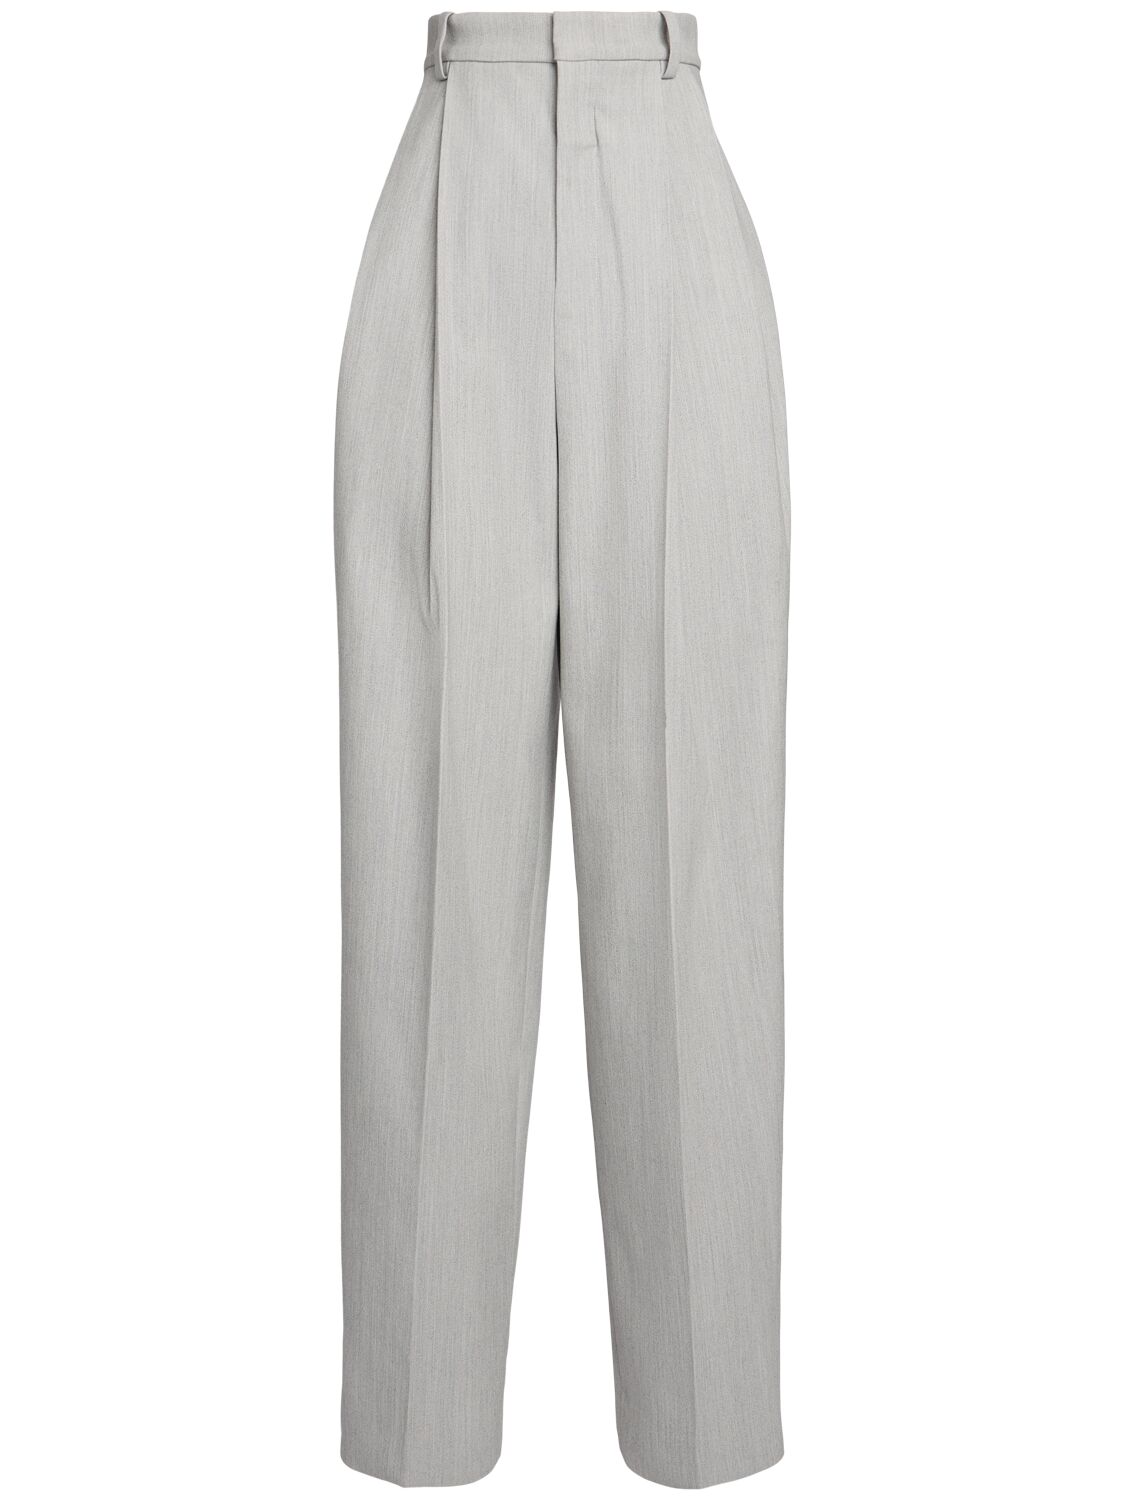 Jacquemus Le Trouseralon Curzio Cotton Blend Trousers In Light Grey